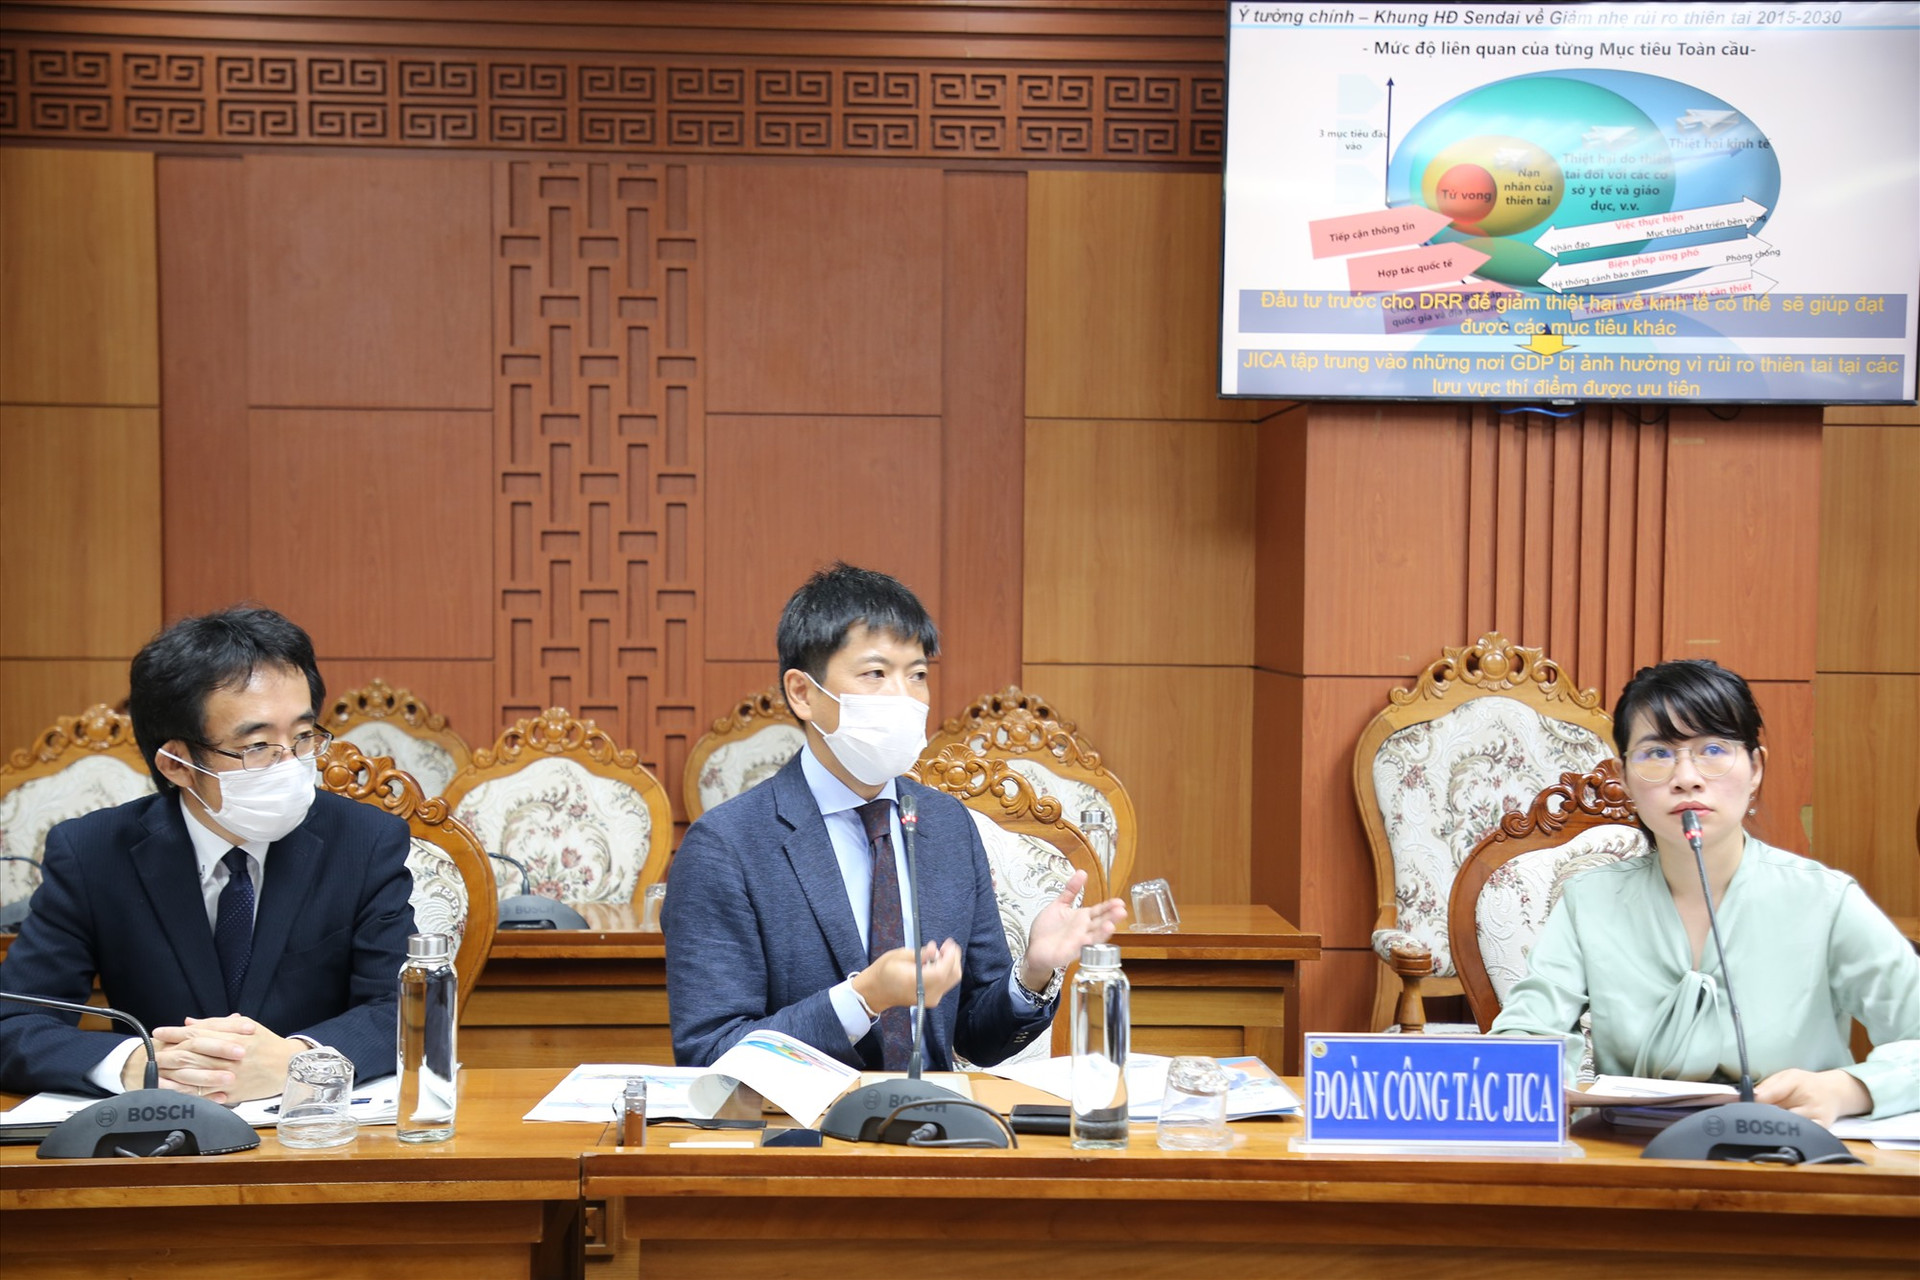 Đại diện đoàn công tác của JICA trình bày mục tiêu các dự án đầu tư tại Quảng Nam. Ảnh: A.N